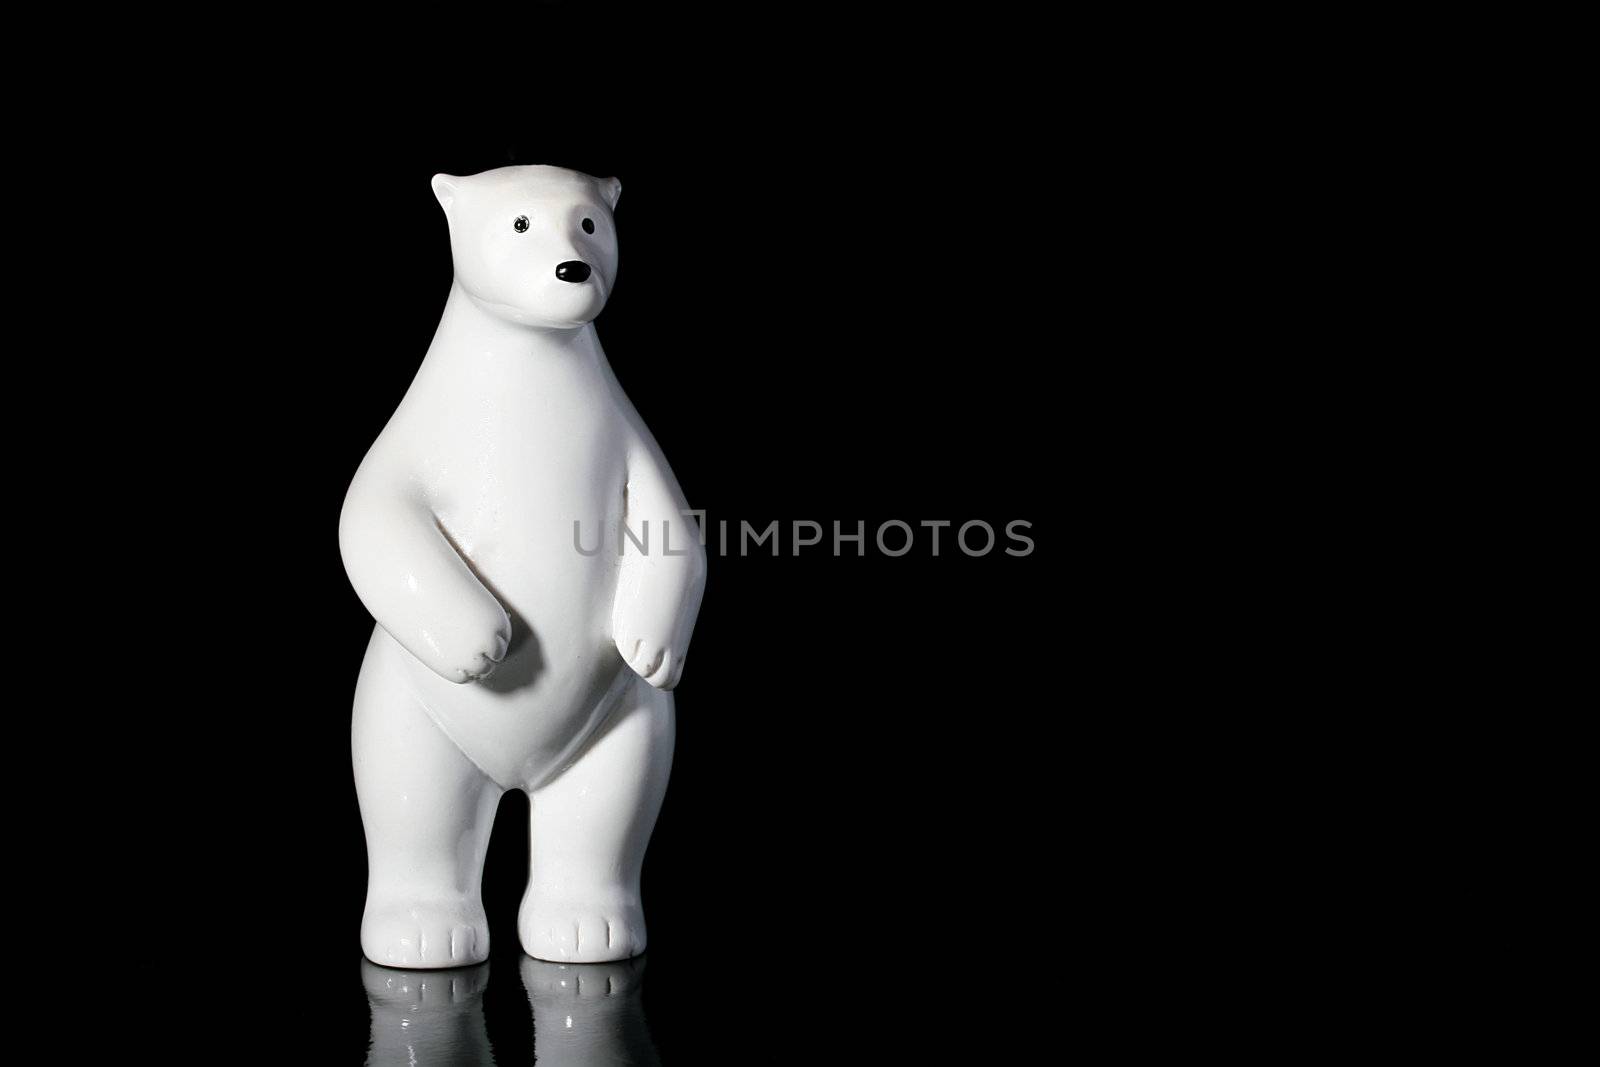 Toy - a polar bear as an ornament for winter holidays.